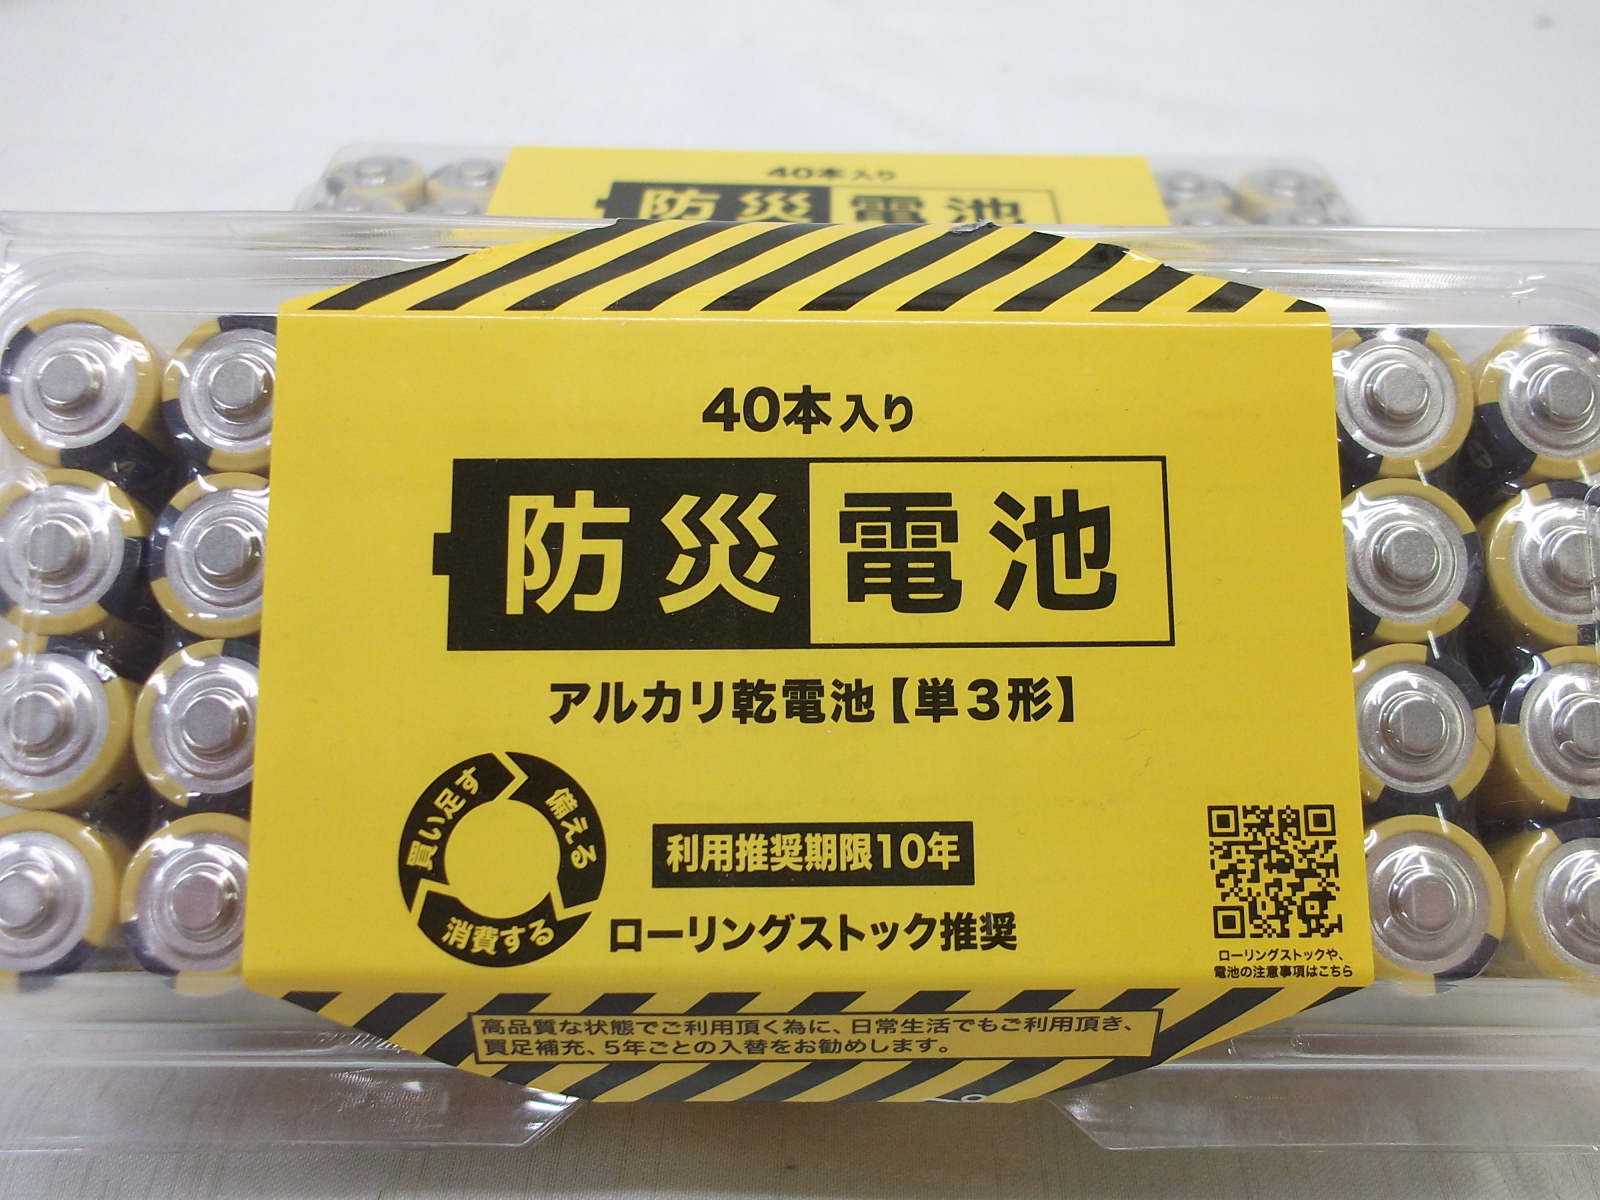 新作人気モデル アルカリ乾電池 単3型 単三型 8本 日本製 ヤマダセレクト 推奨使用期間10年